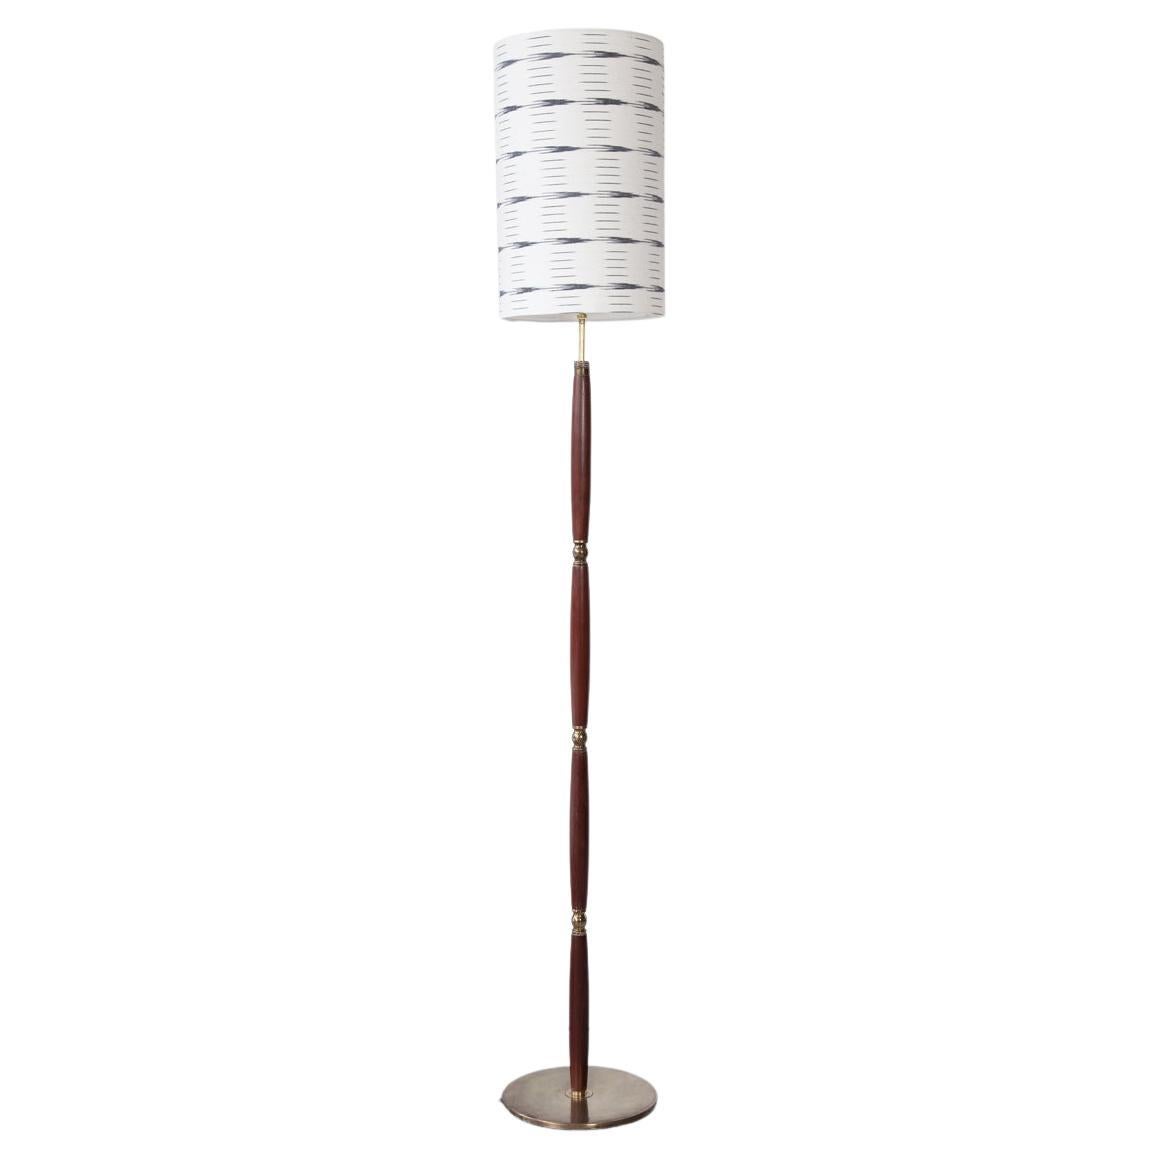 Mid-20th Century, Danish, Solid Teak Floor Lamp